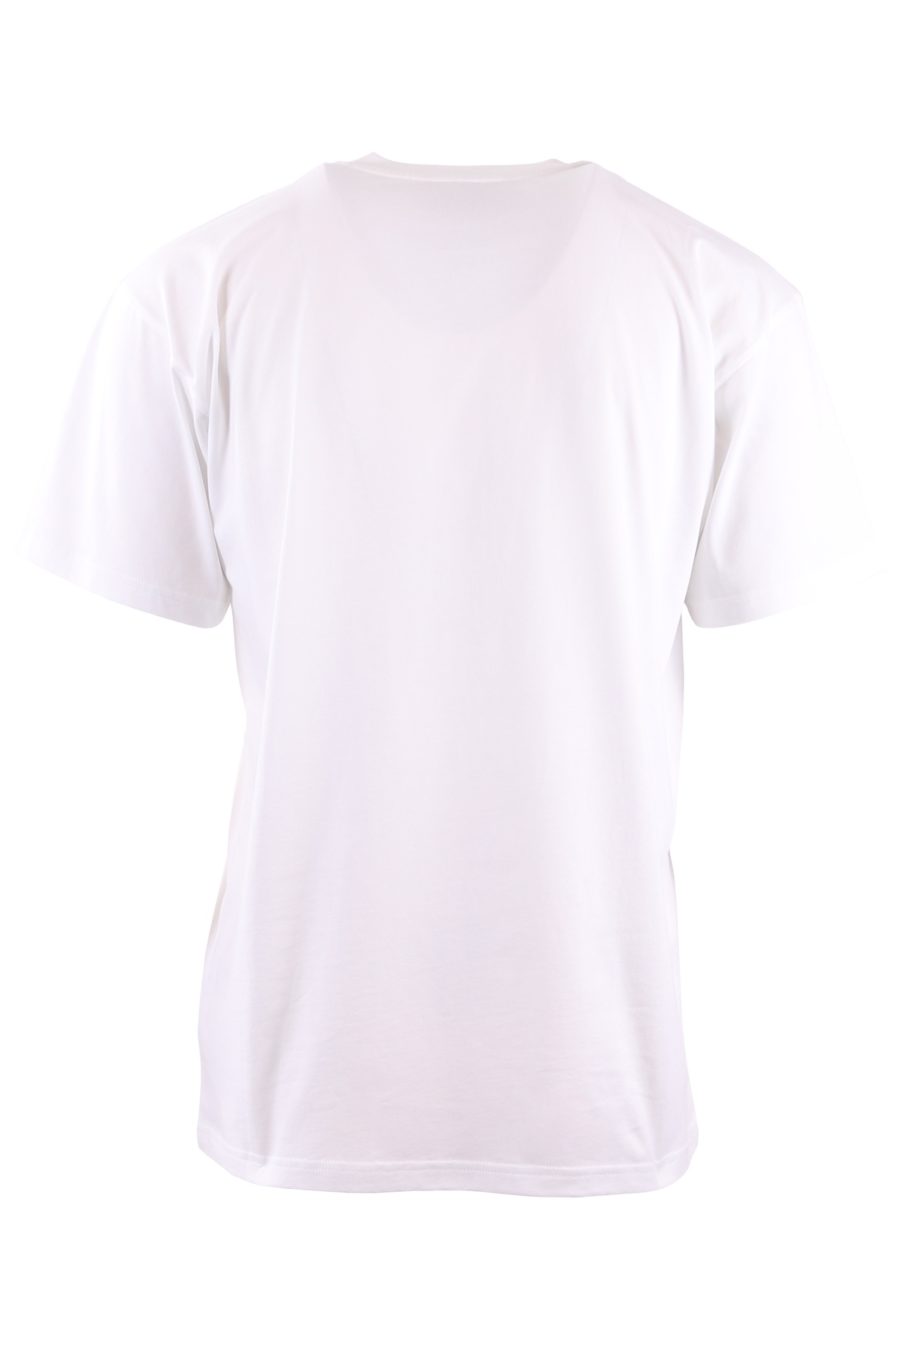 Camiseta Moschino Couture blanca oversize con oso grande - 6c7718be4979da96f15fad71e14a796f46c6ec47